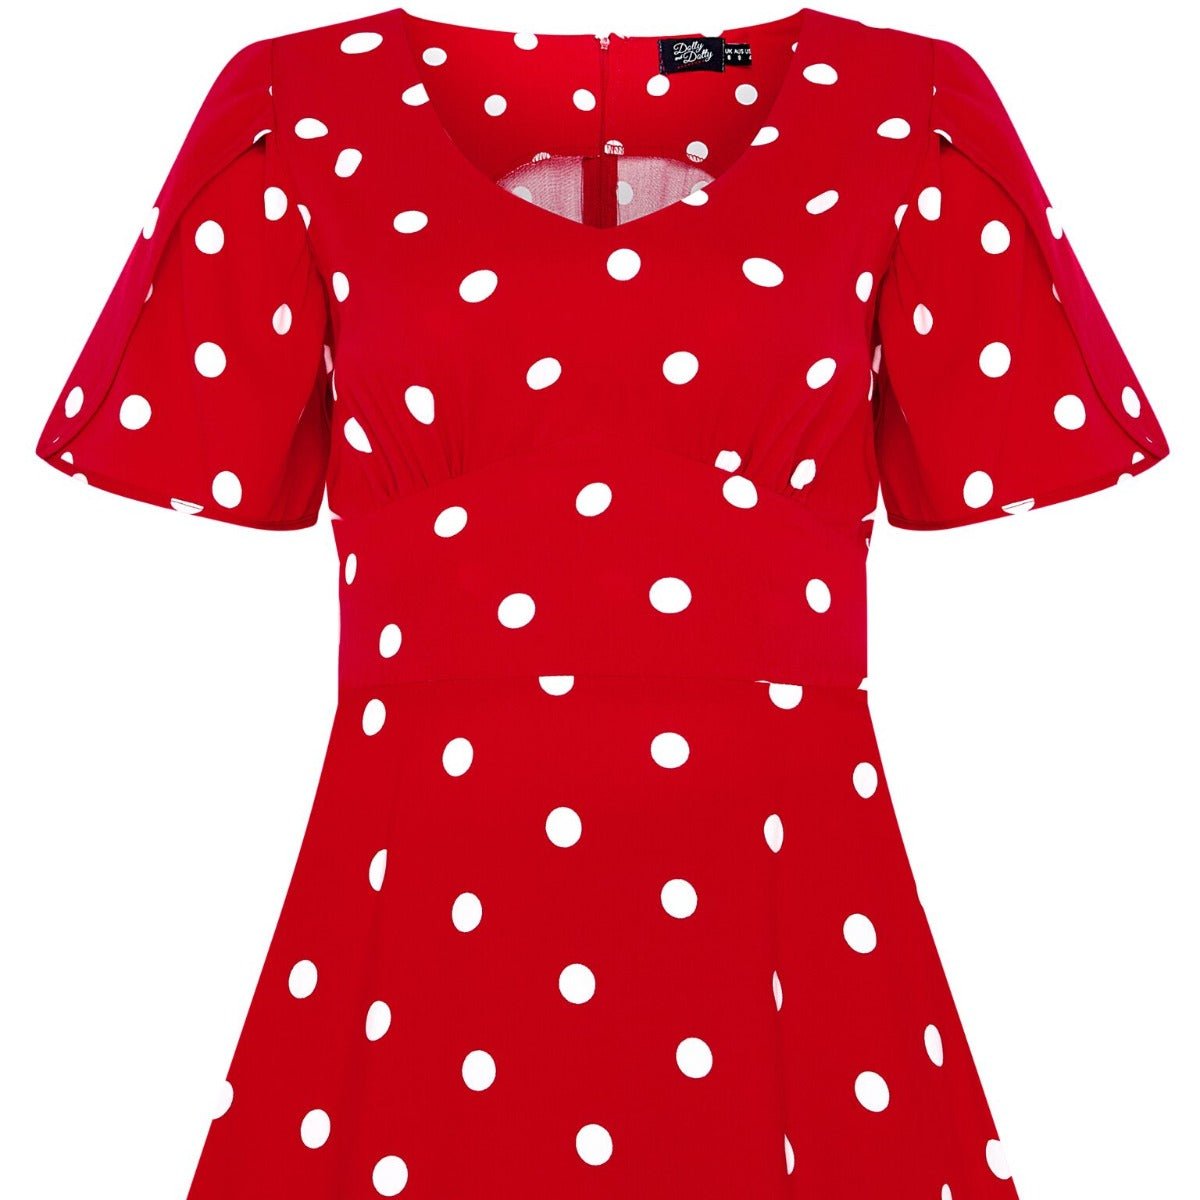 Janice Summer Dress in Red-White Polka Dot